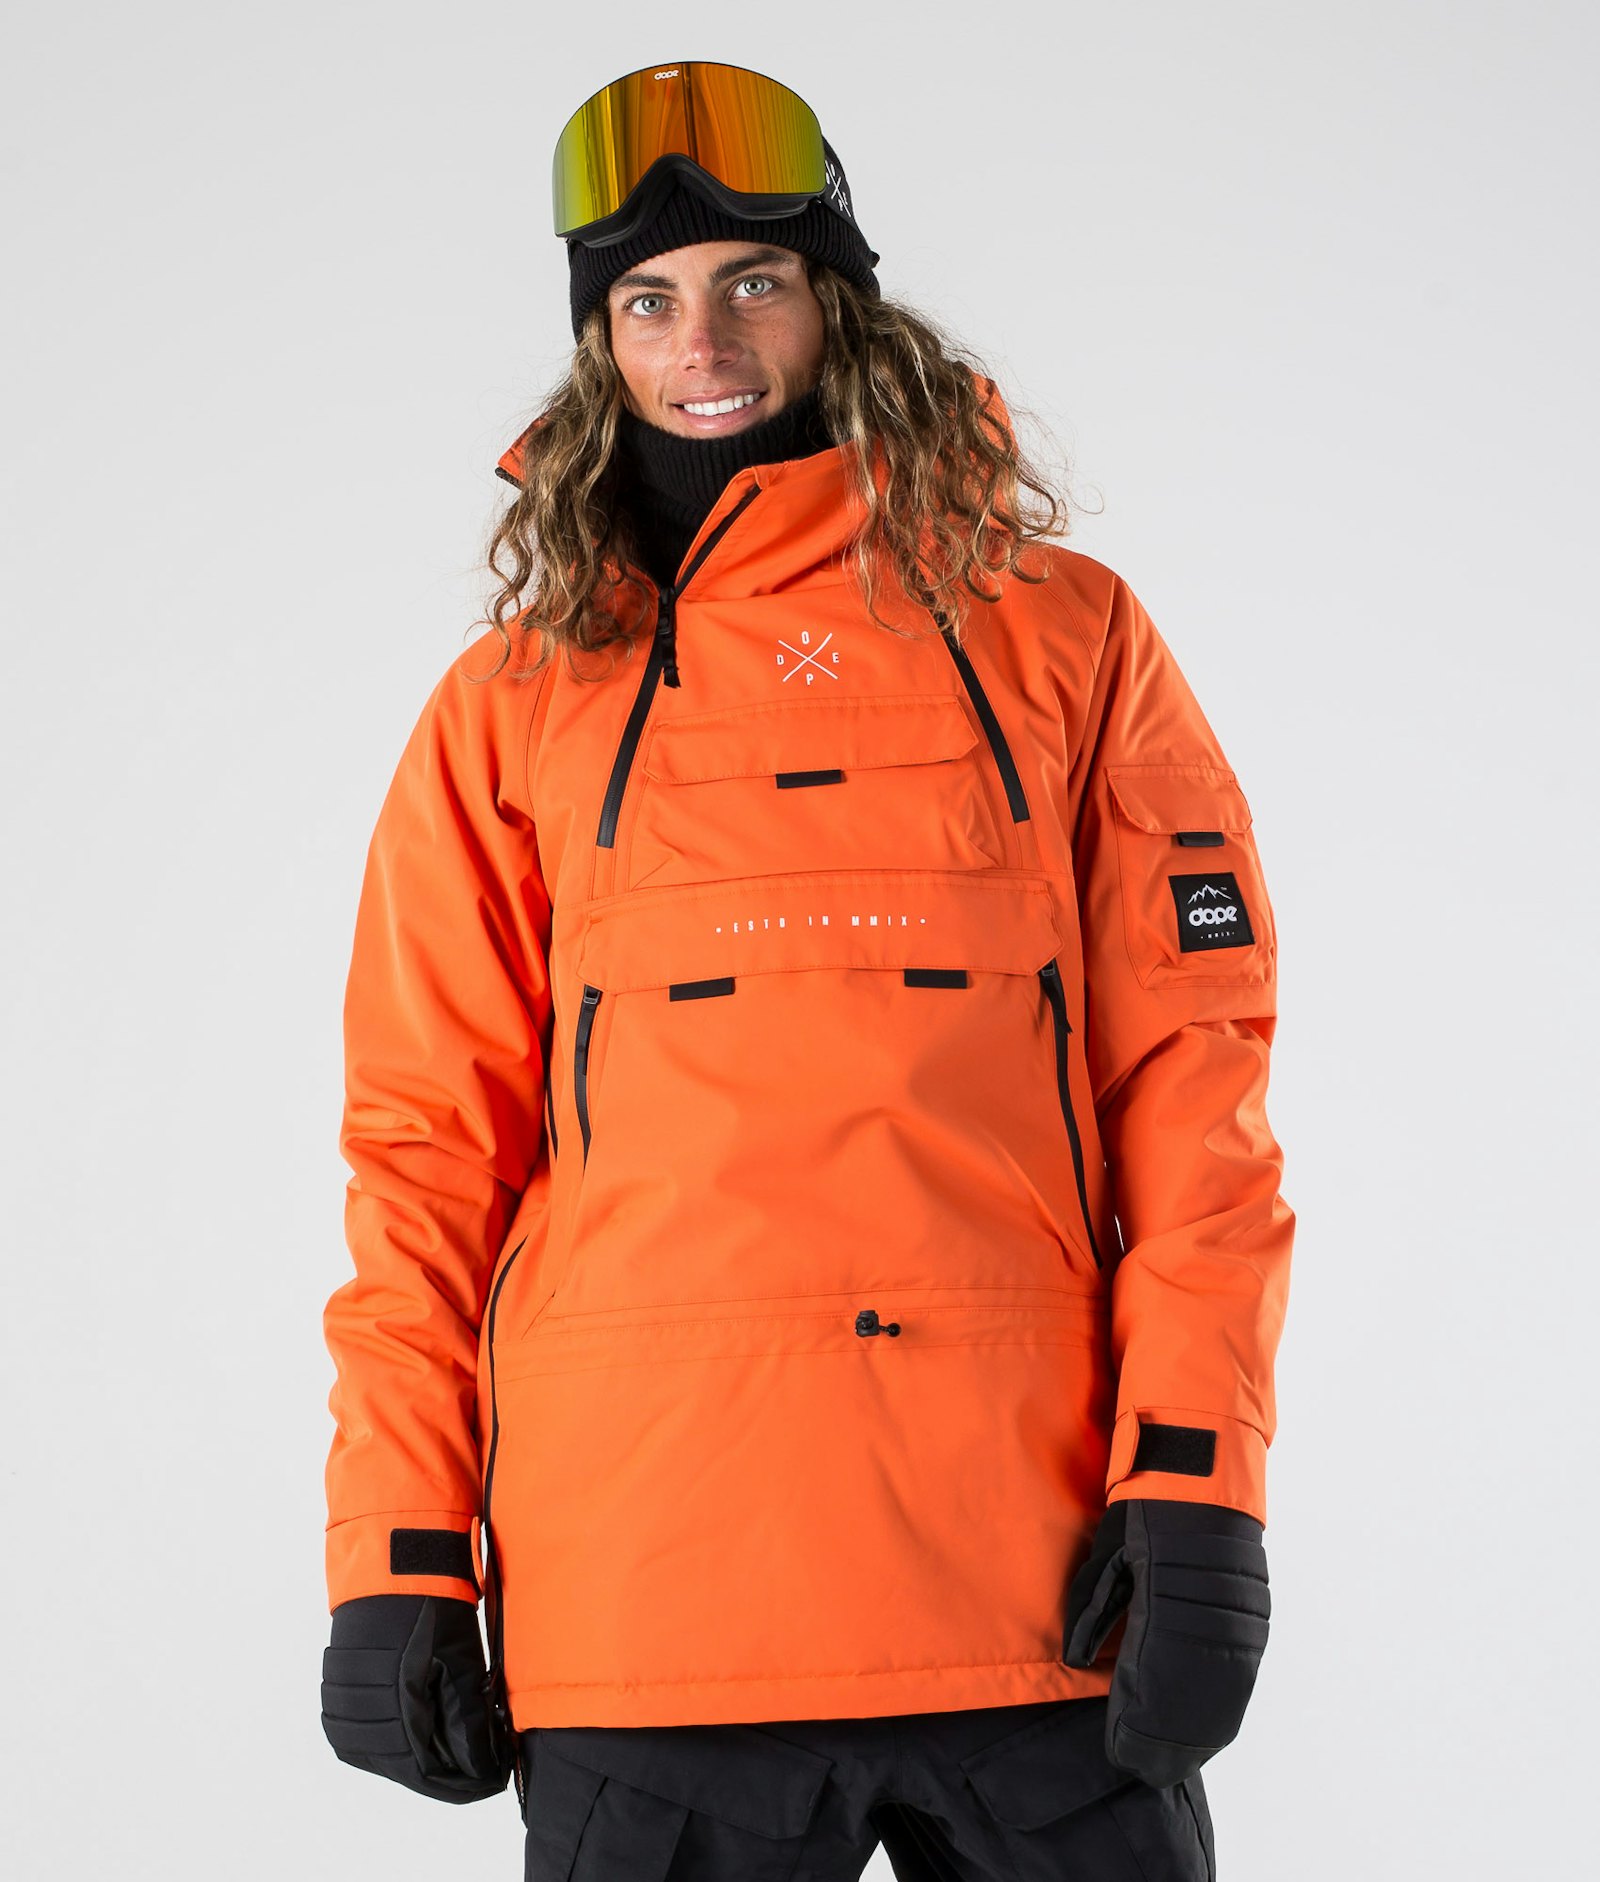 Akin 2019 Snowboardjacke Herren Orange